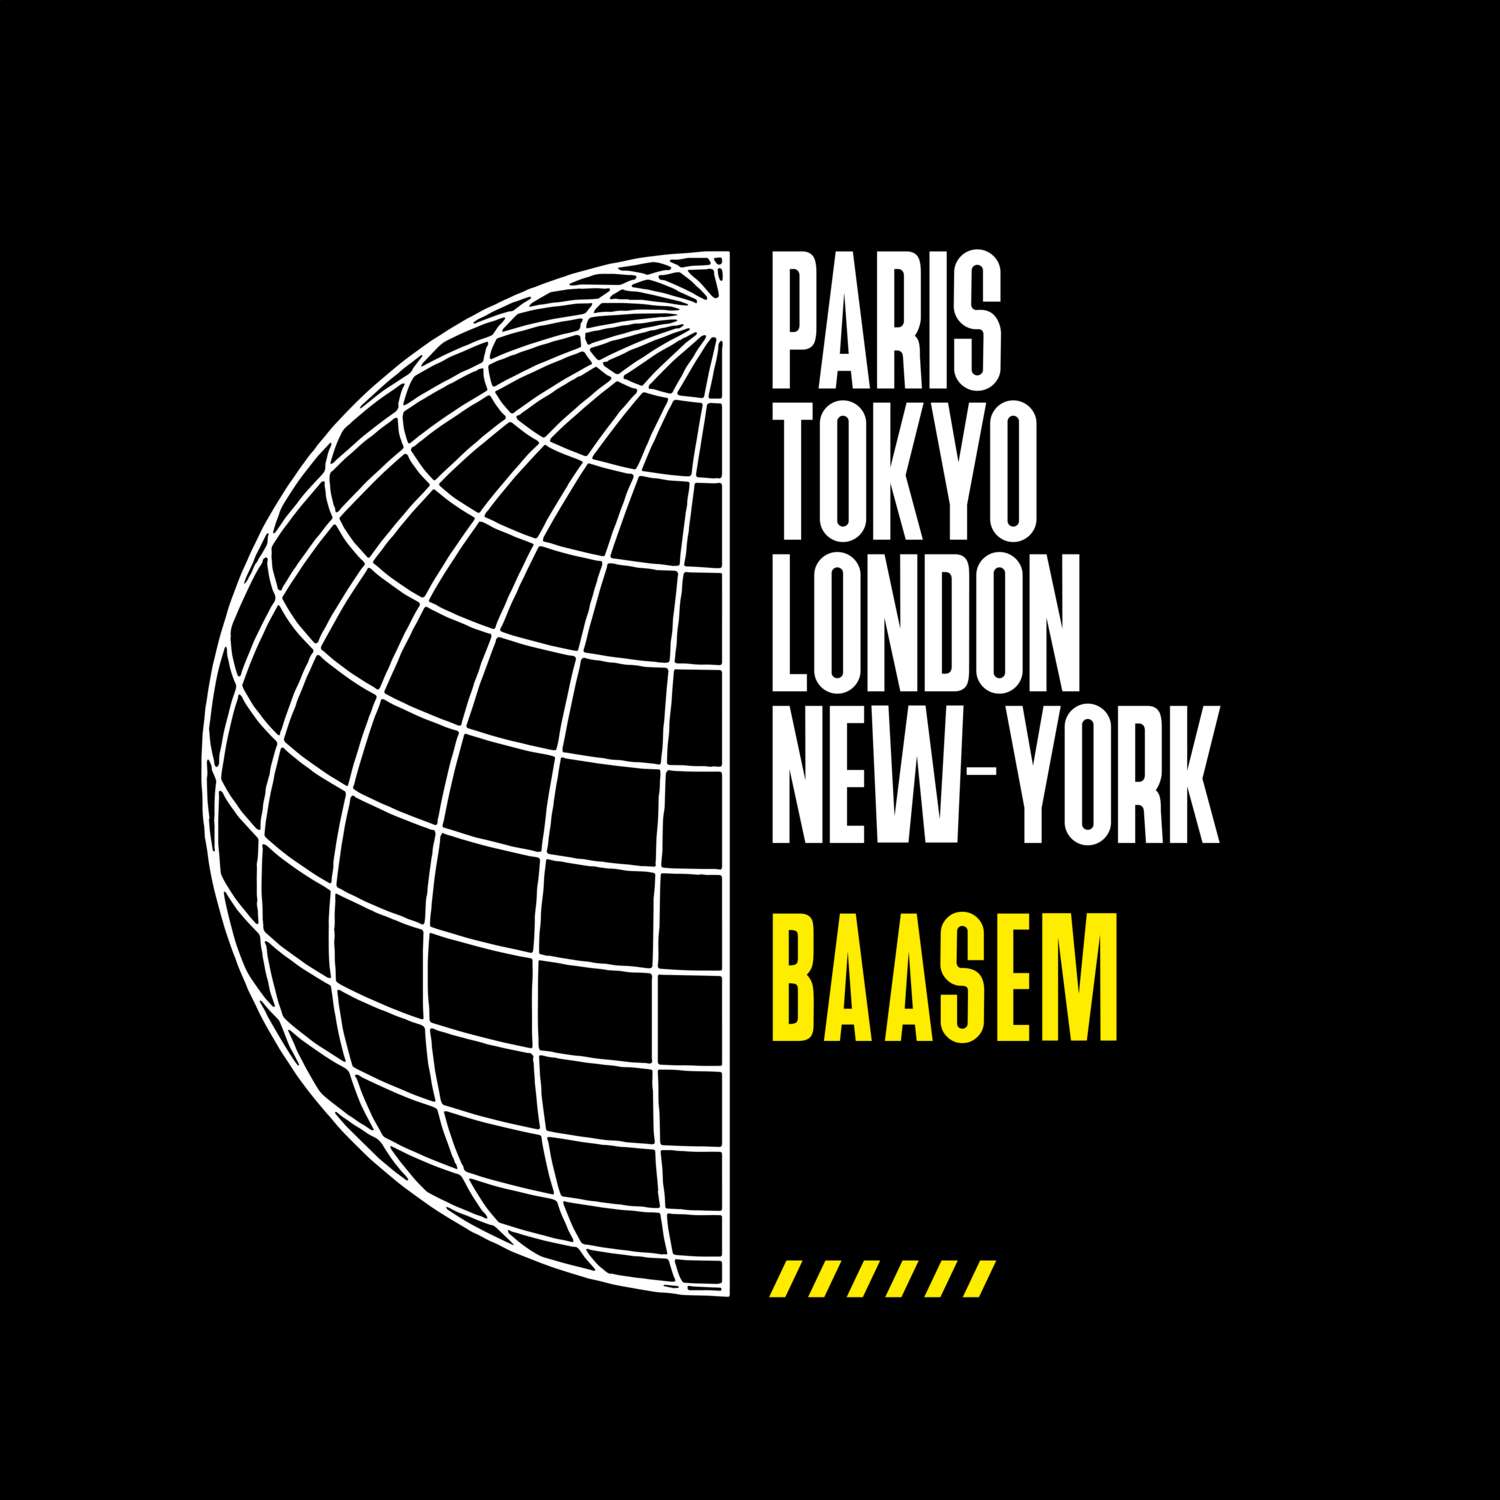 Baasem T-Shirt »Paris Tokyo London«